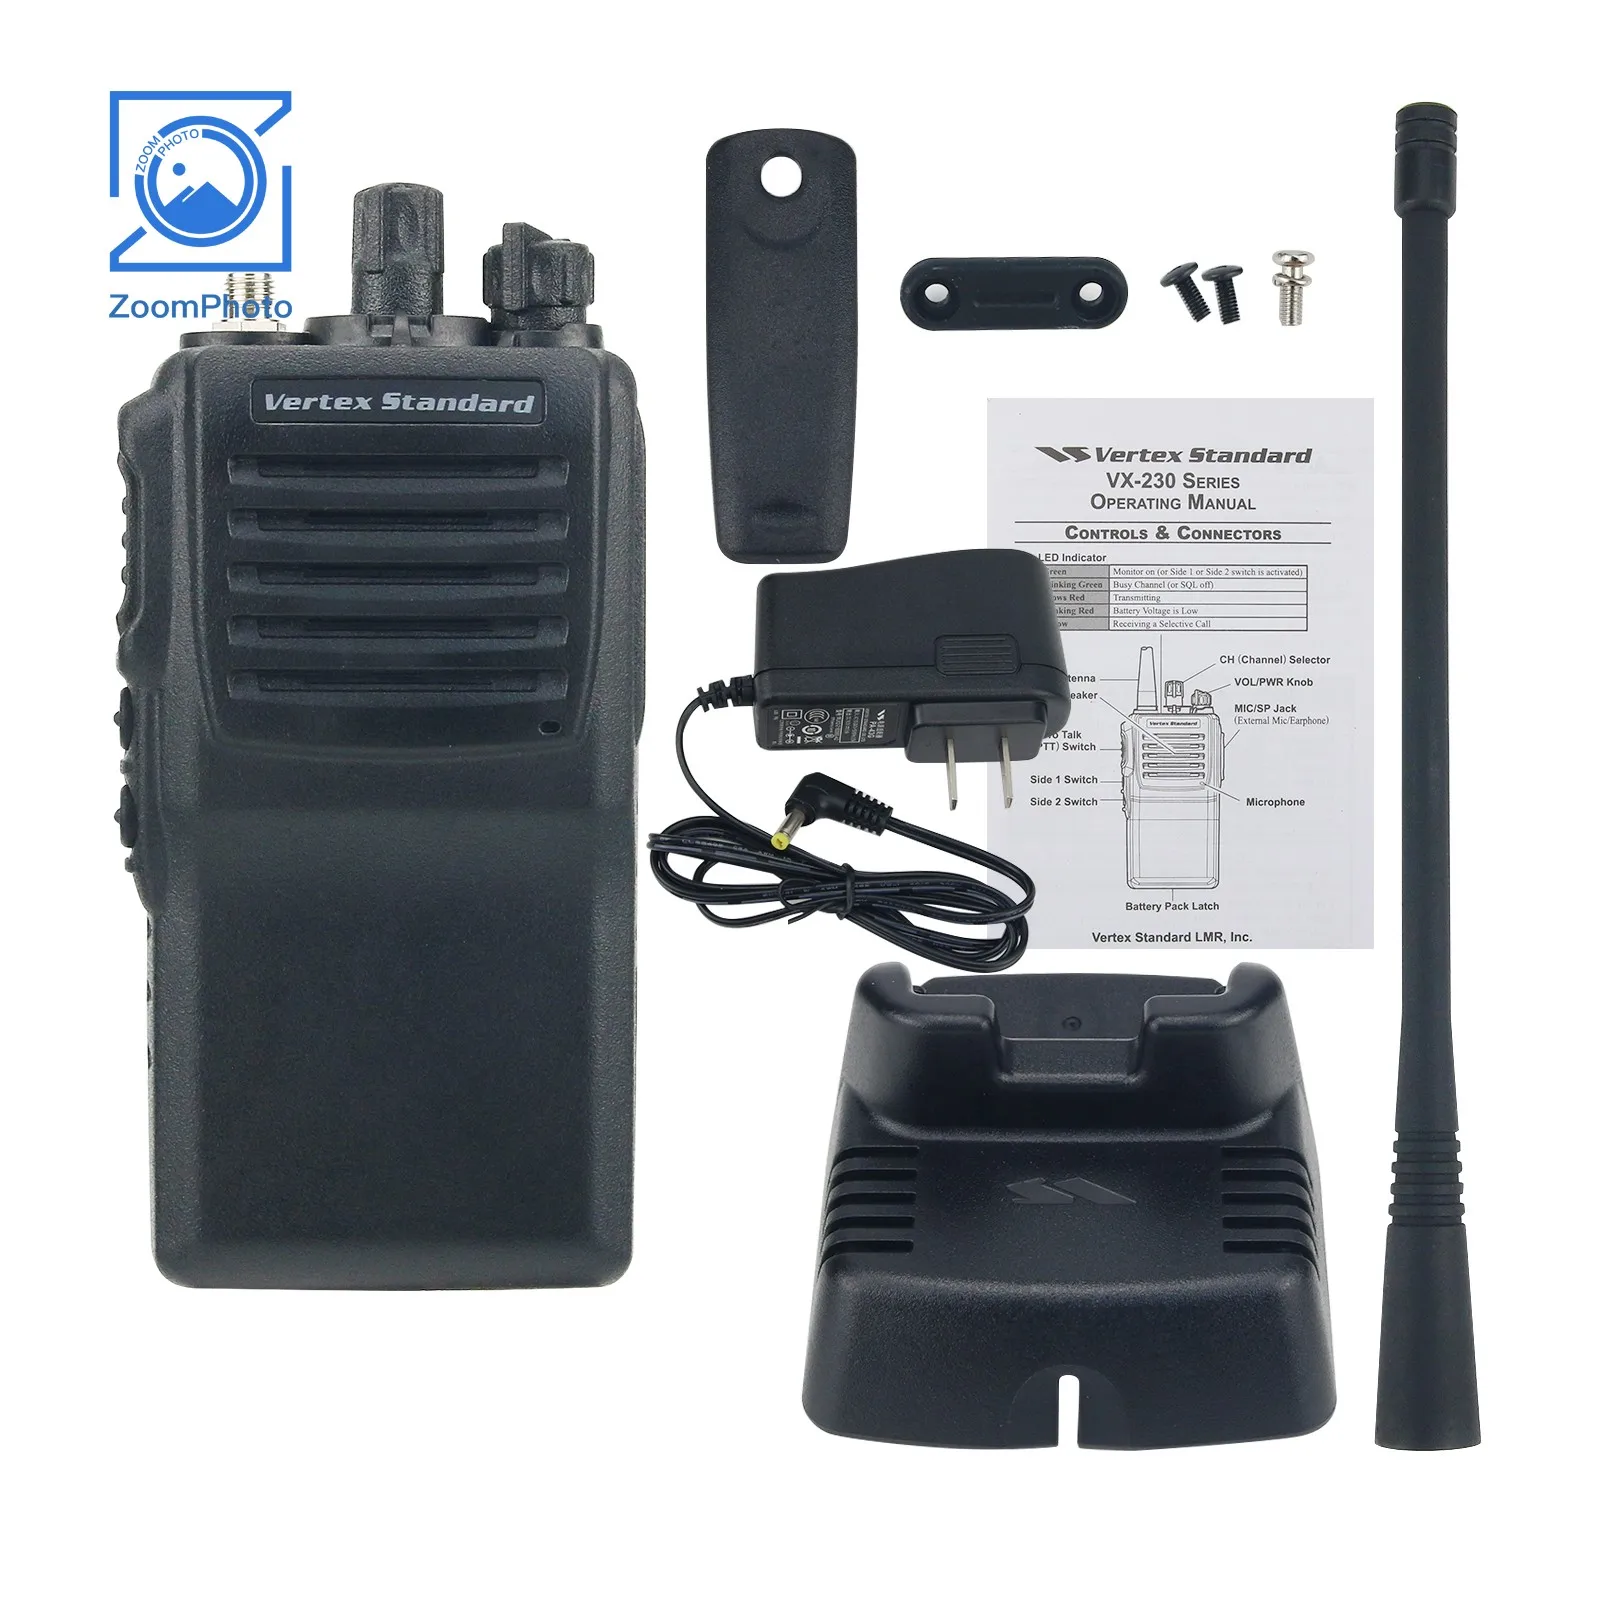 

VX-231 5W 10KM UHF Radio Original Walkie Talkie 400-470MHz 136-174MHz Handheld Transceiver for Vertex Standard